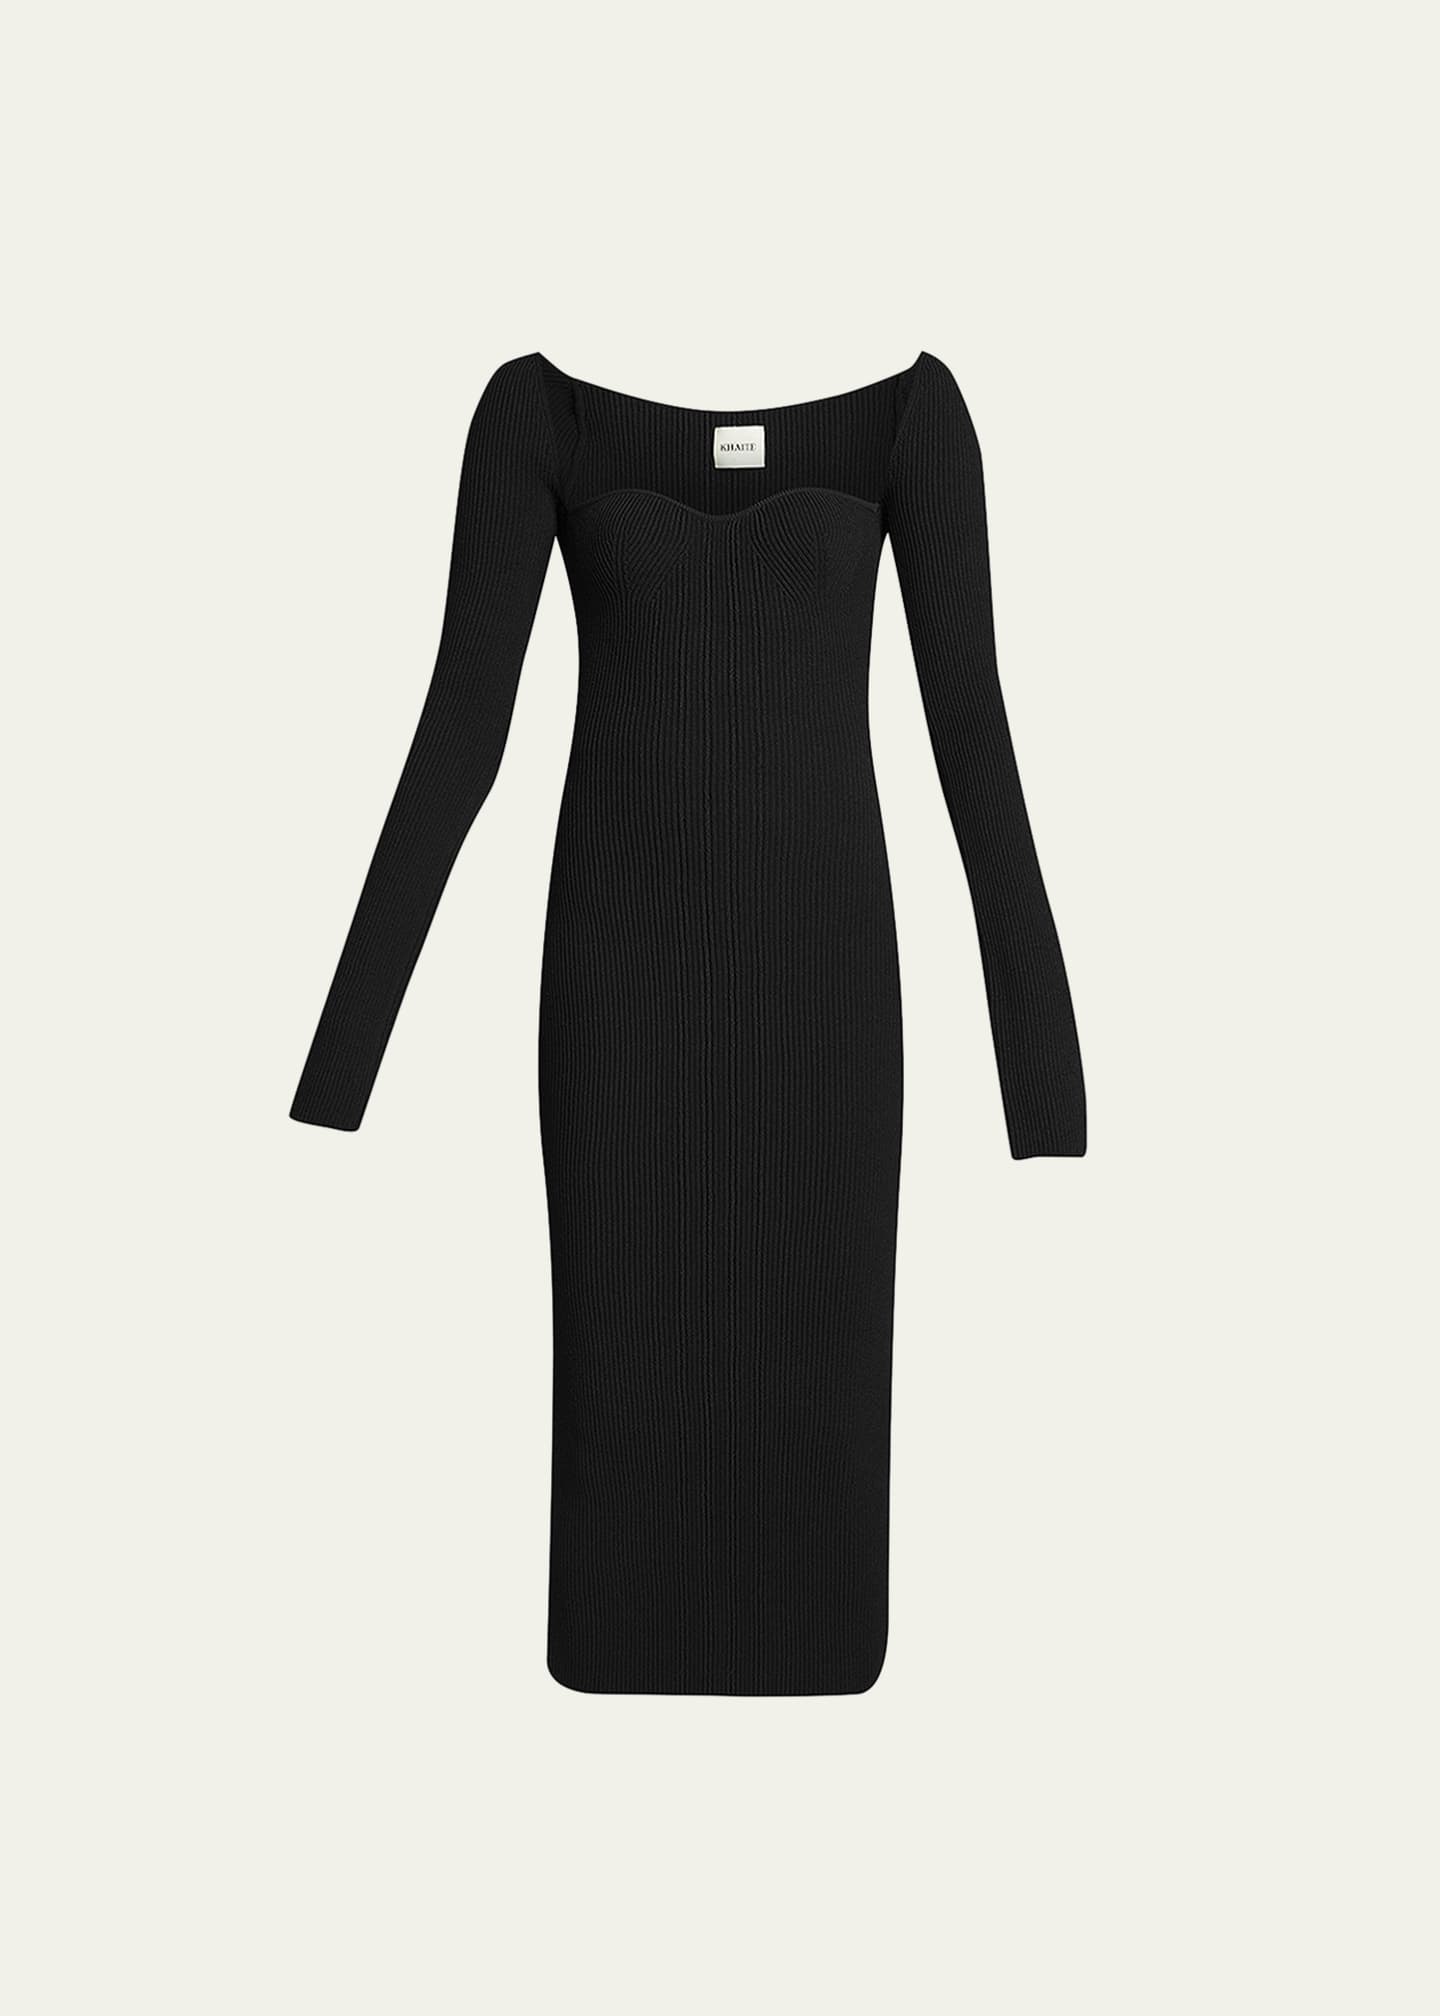 Khaite Beth Long-Sleeve Bustier Dress - Bergdorf Goodman